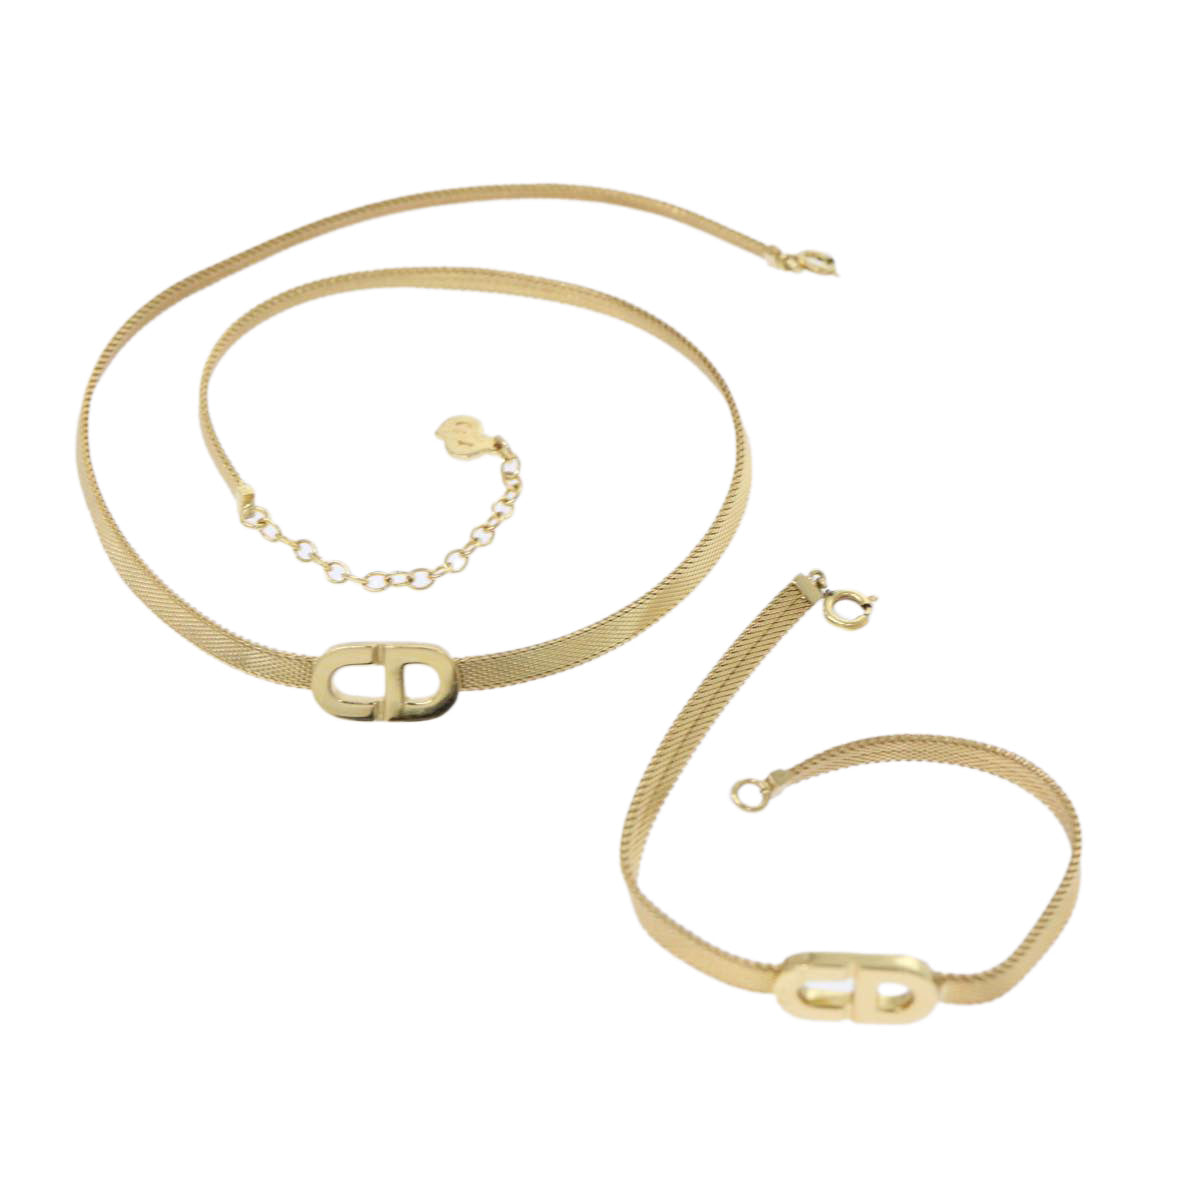 Christian Dior Bracelet Necklace 2Set Gold Tone Auth am4858 - 0